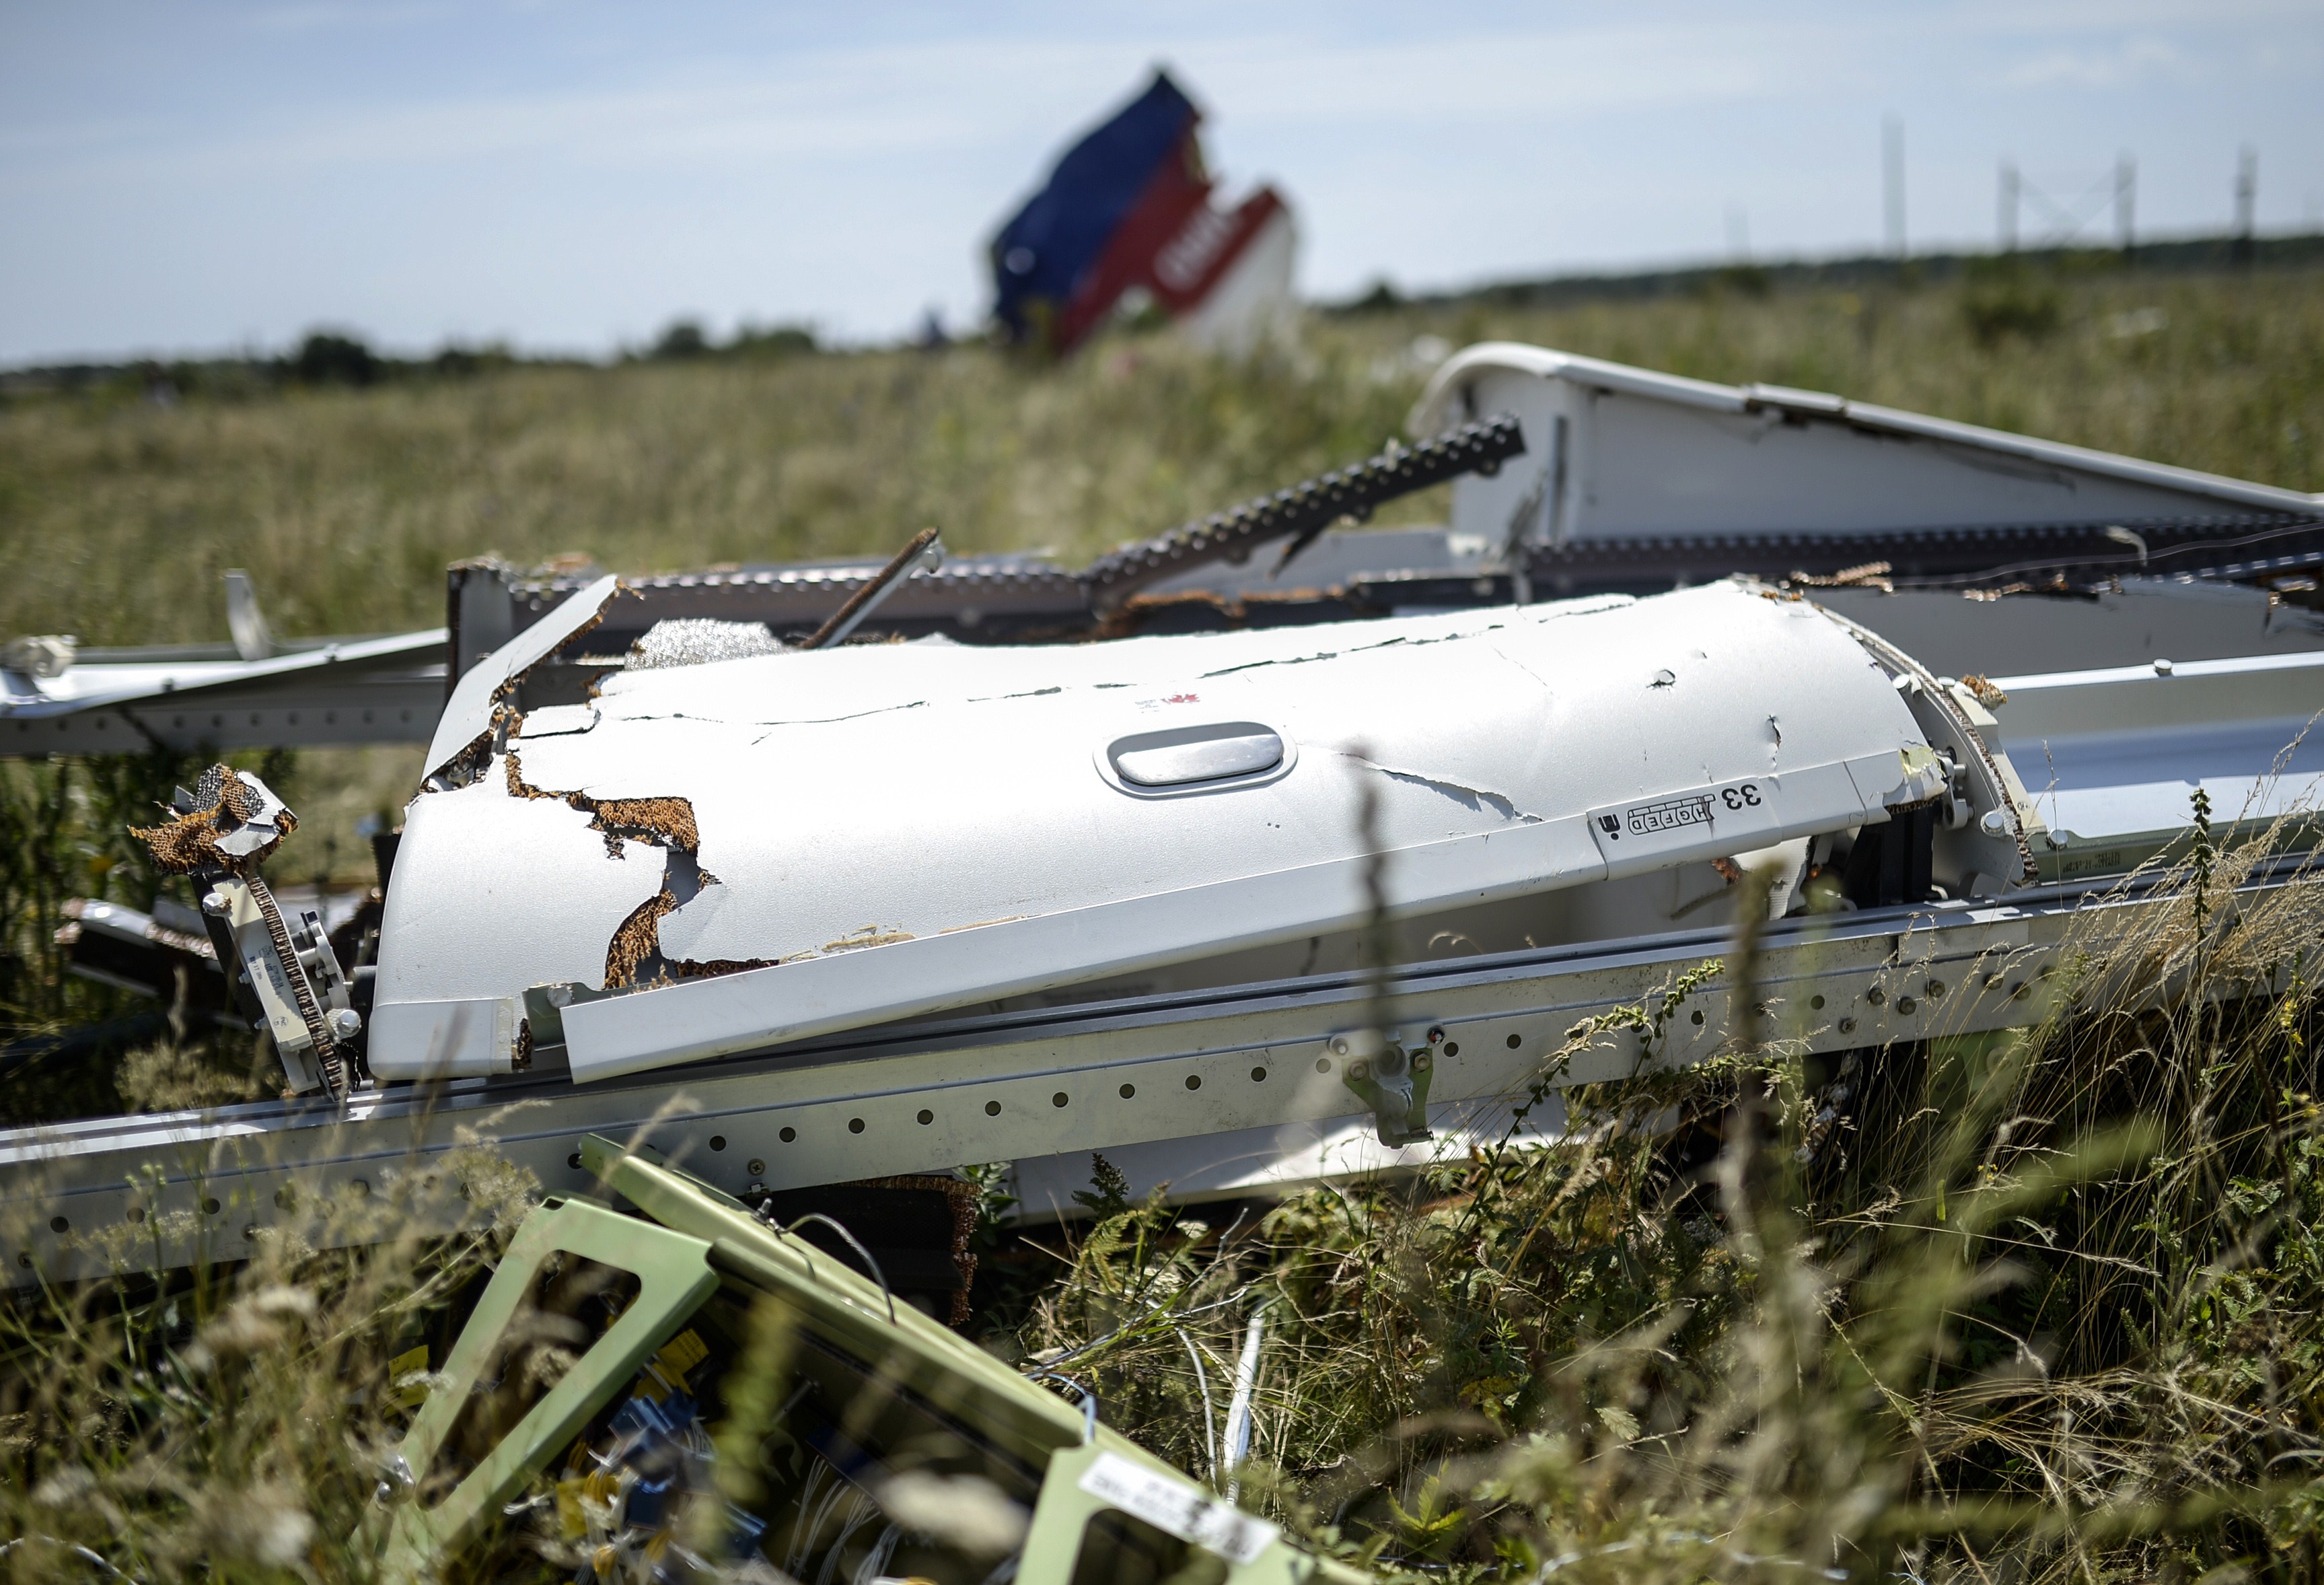 Russland weist Schuldzuweisung der Niederlande zum MH17-Abschuss zurück: Es gibt keine Beweise